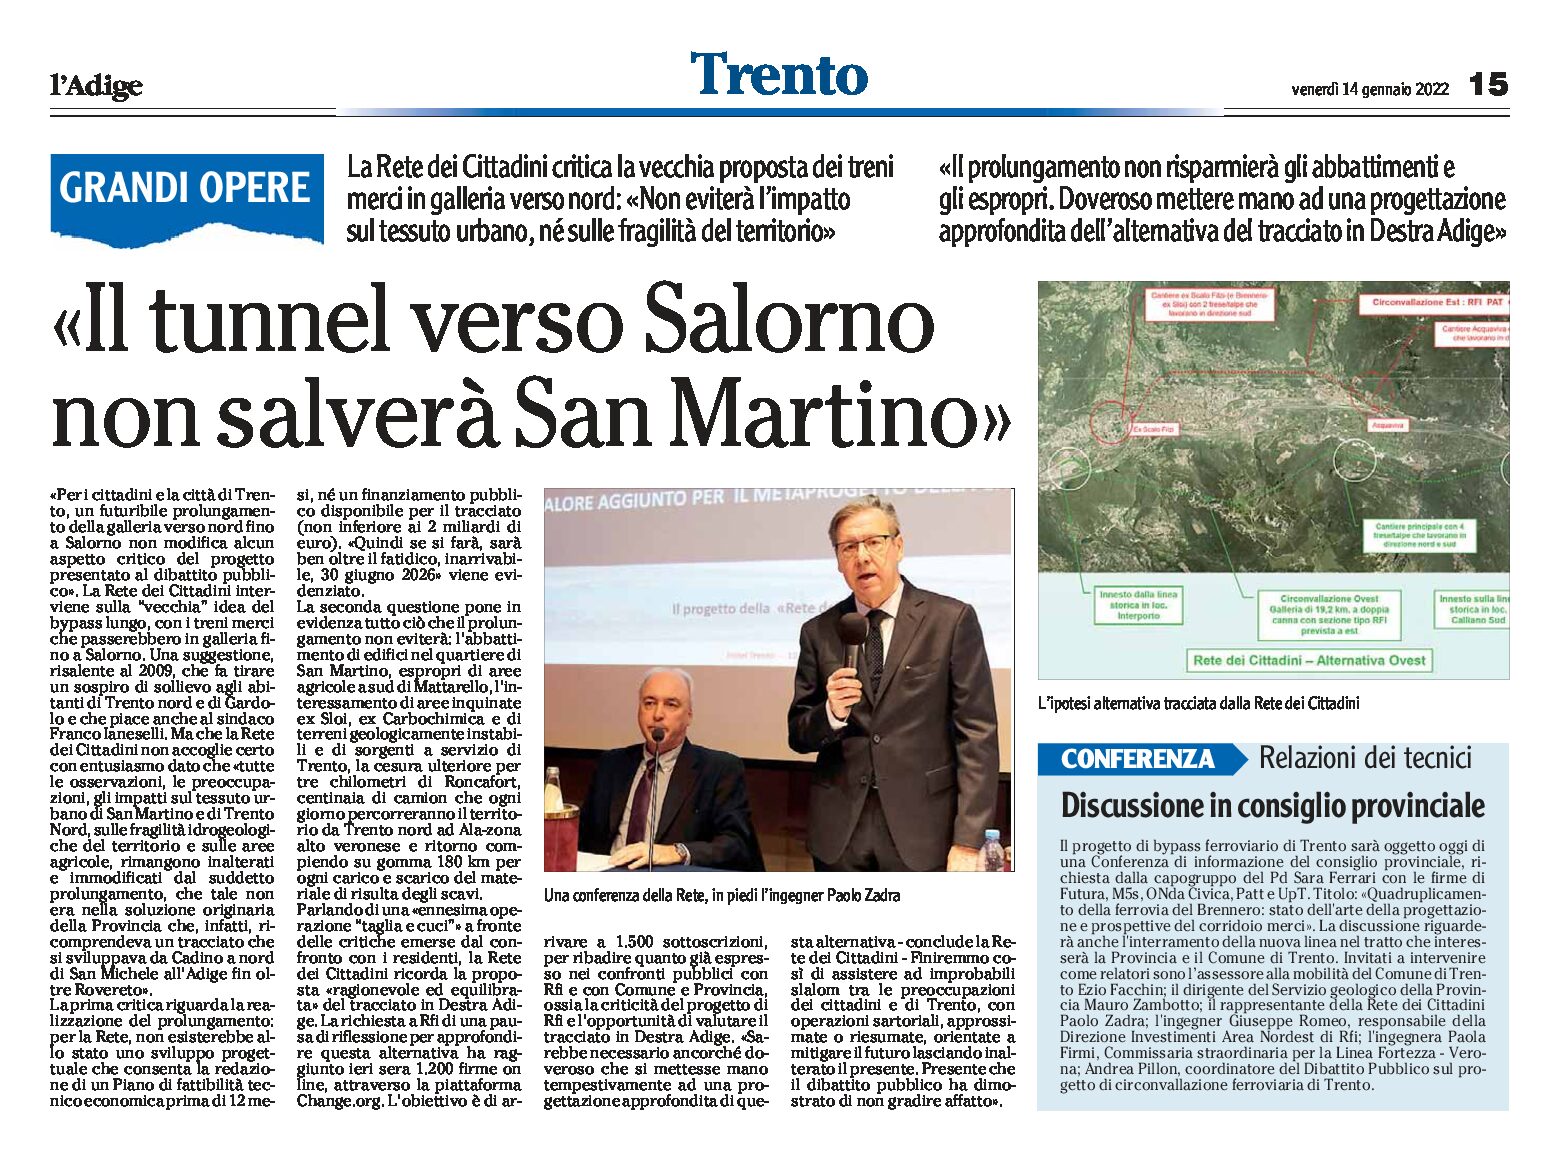 Trento, bypass: il tunnel verso Salorno non salverà San Martino